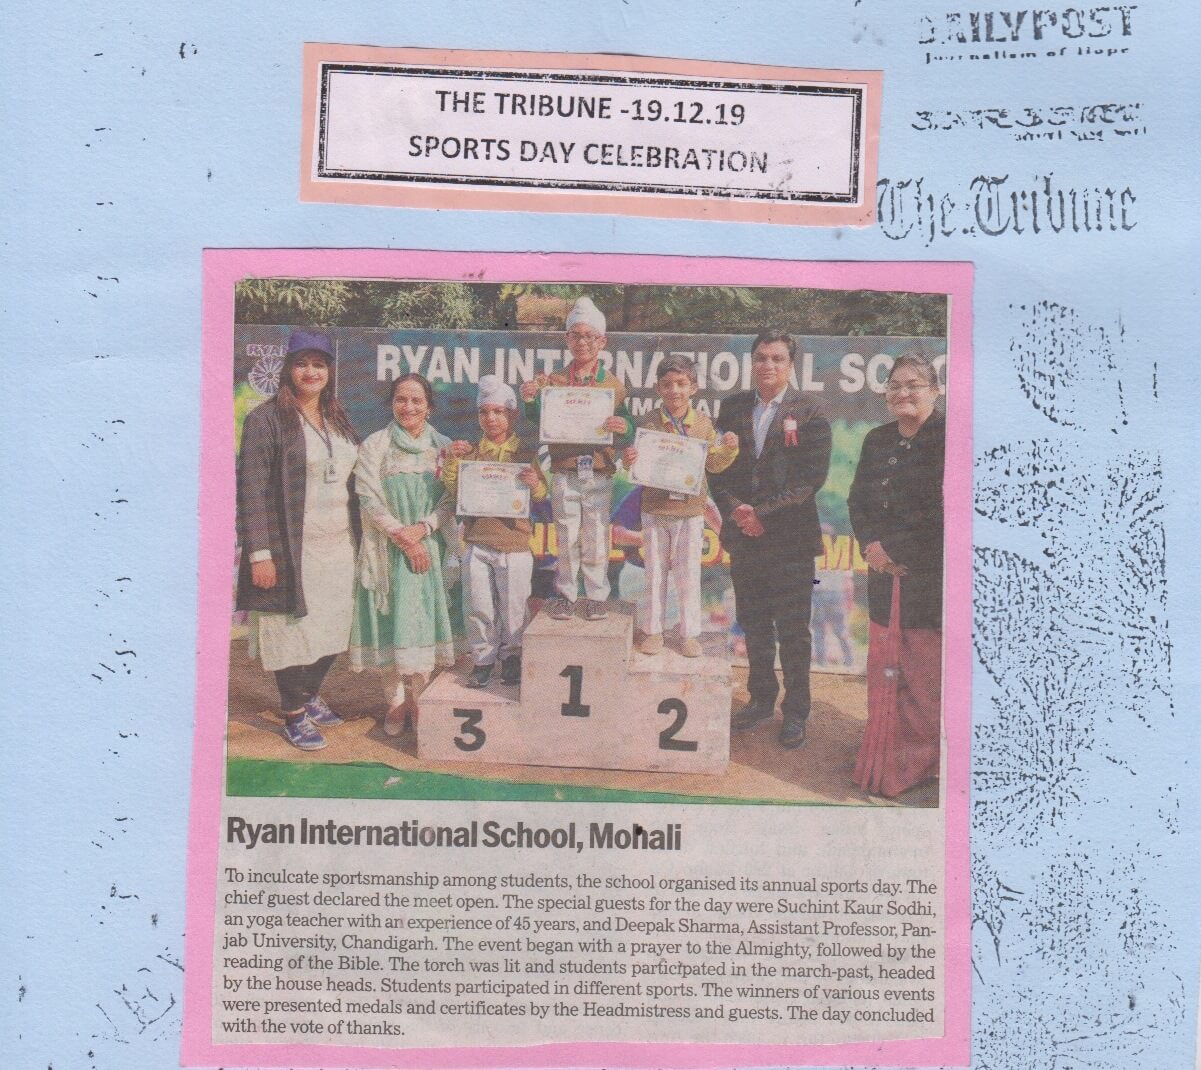 Sports Day Celebration - Ryan International School, Mohali